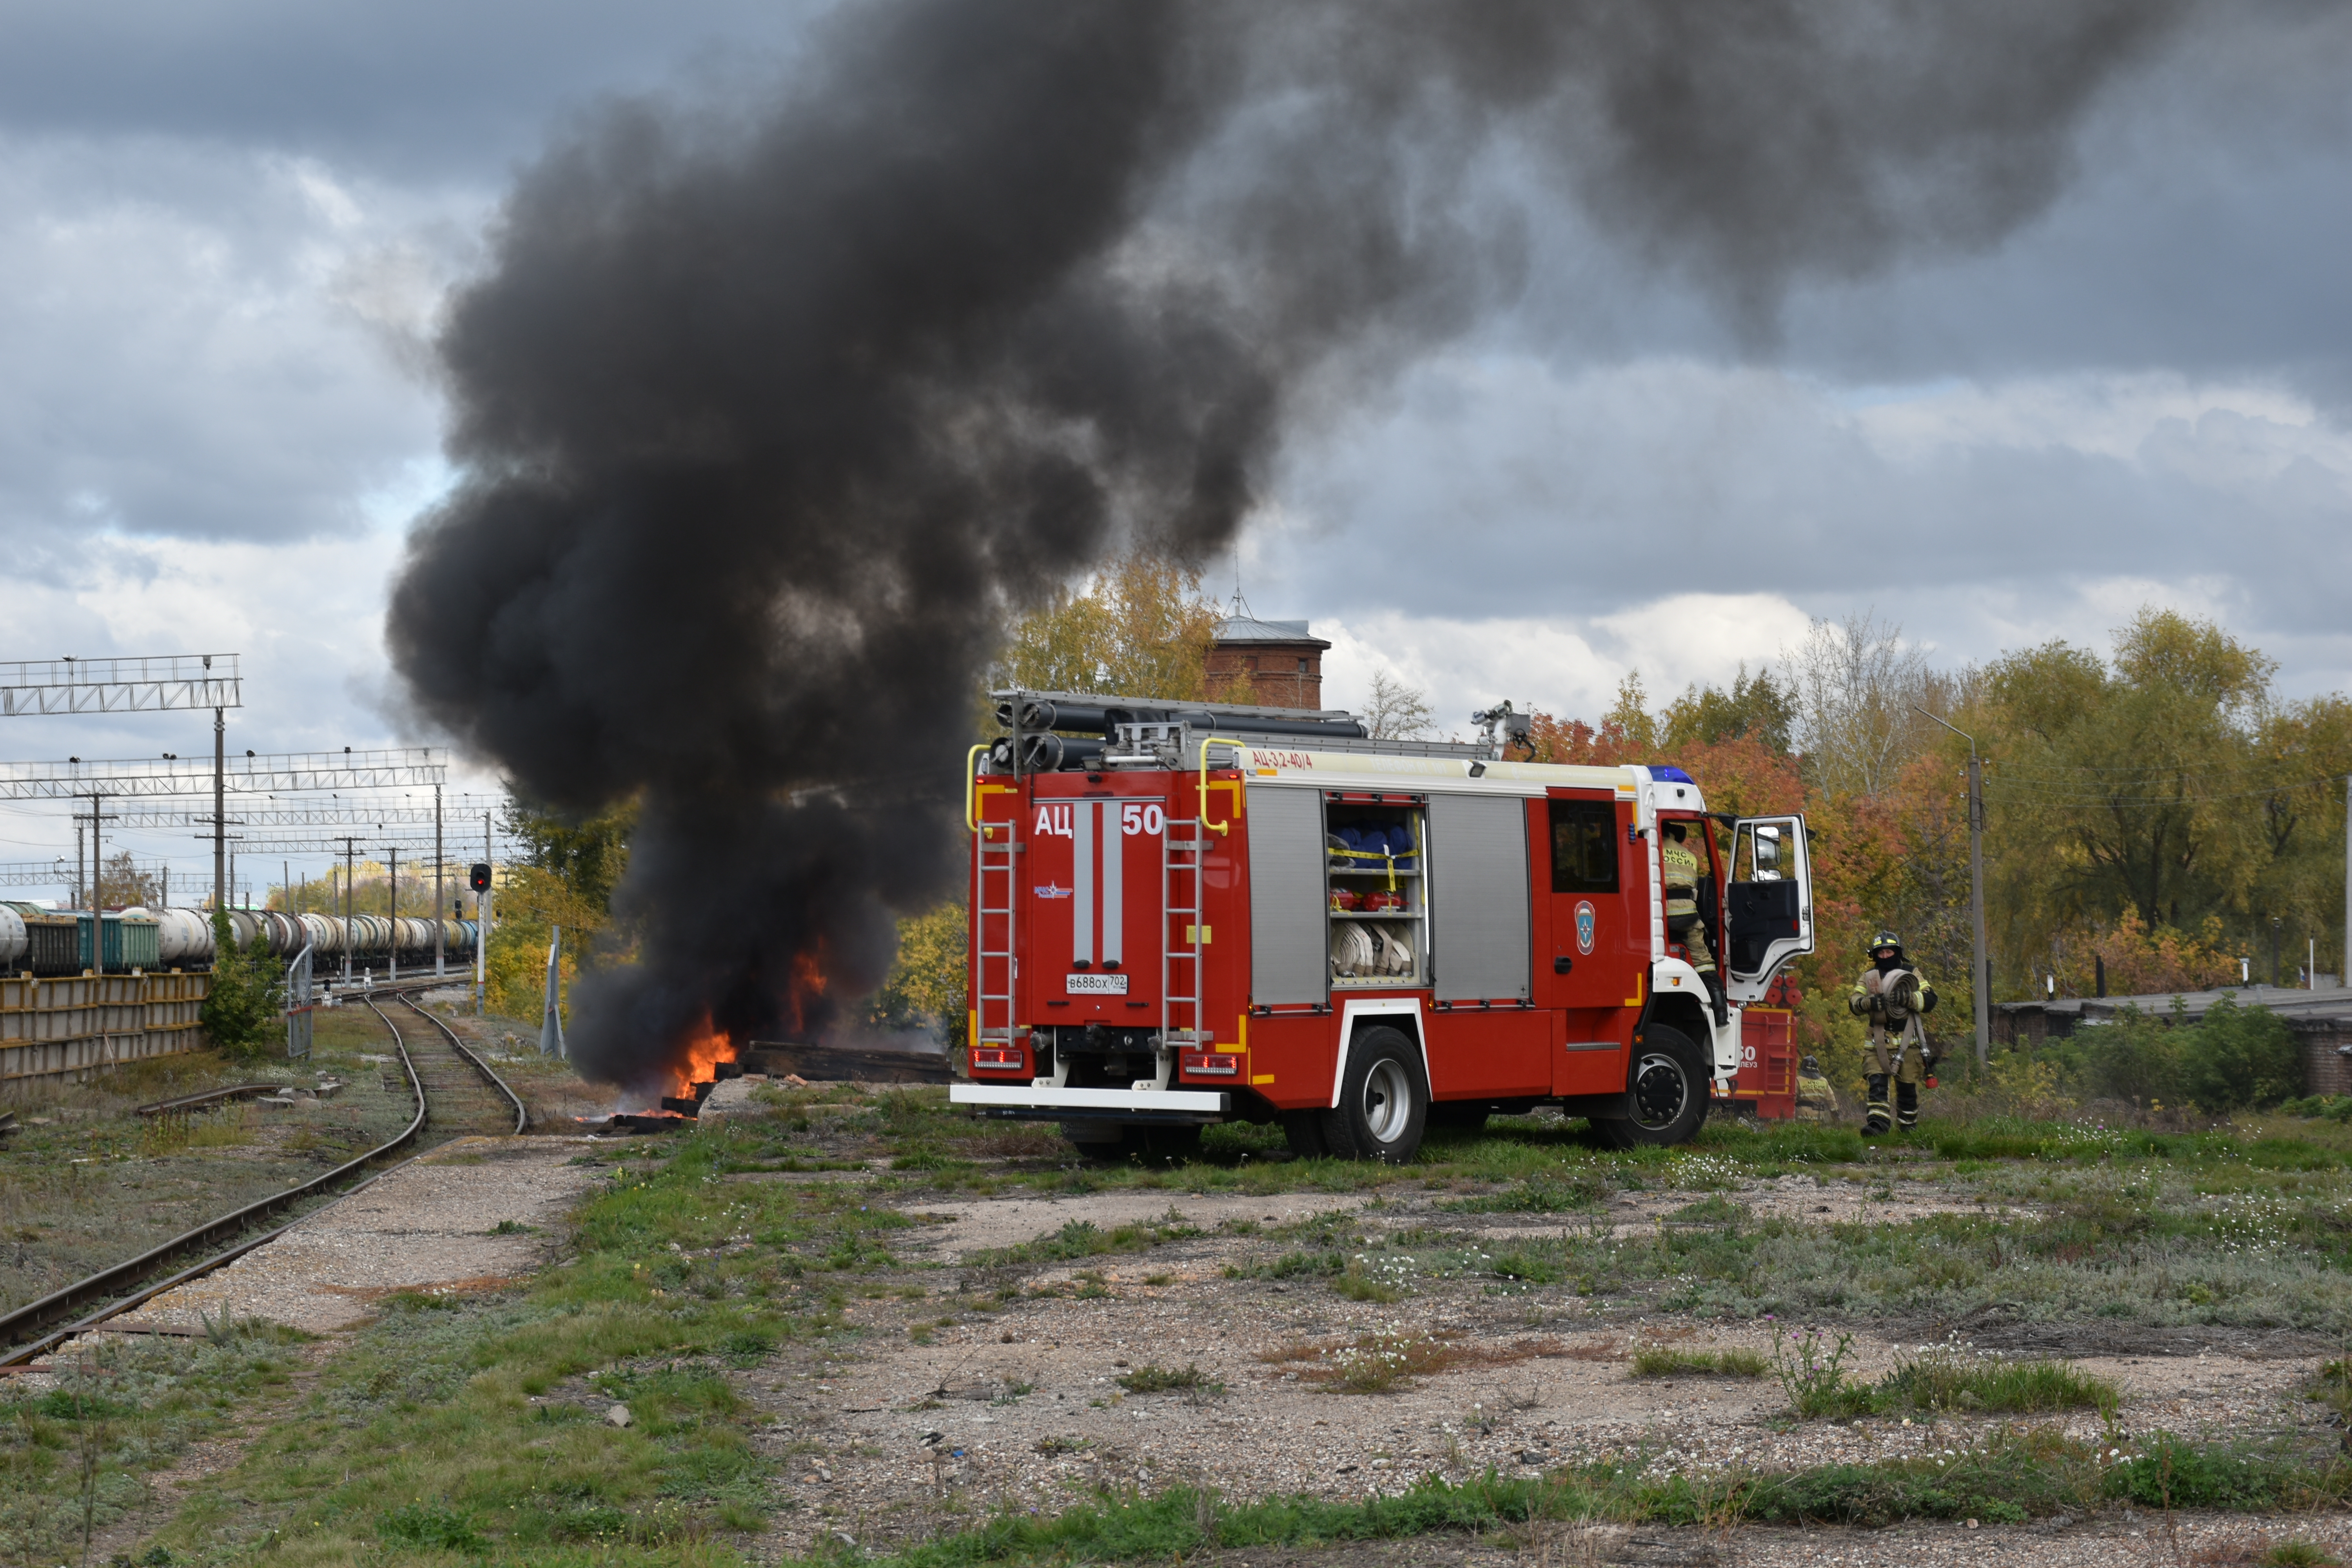 Сегодня произошёл пожар на железнодорожной станции г. Мелеуза